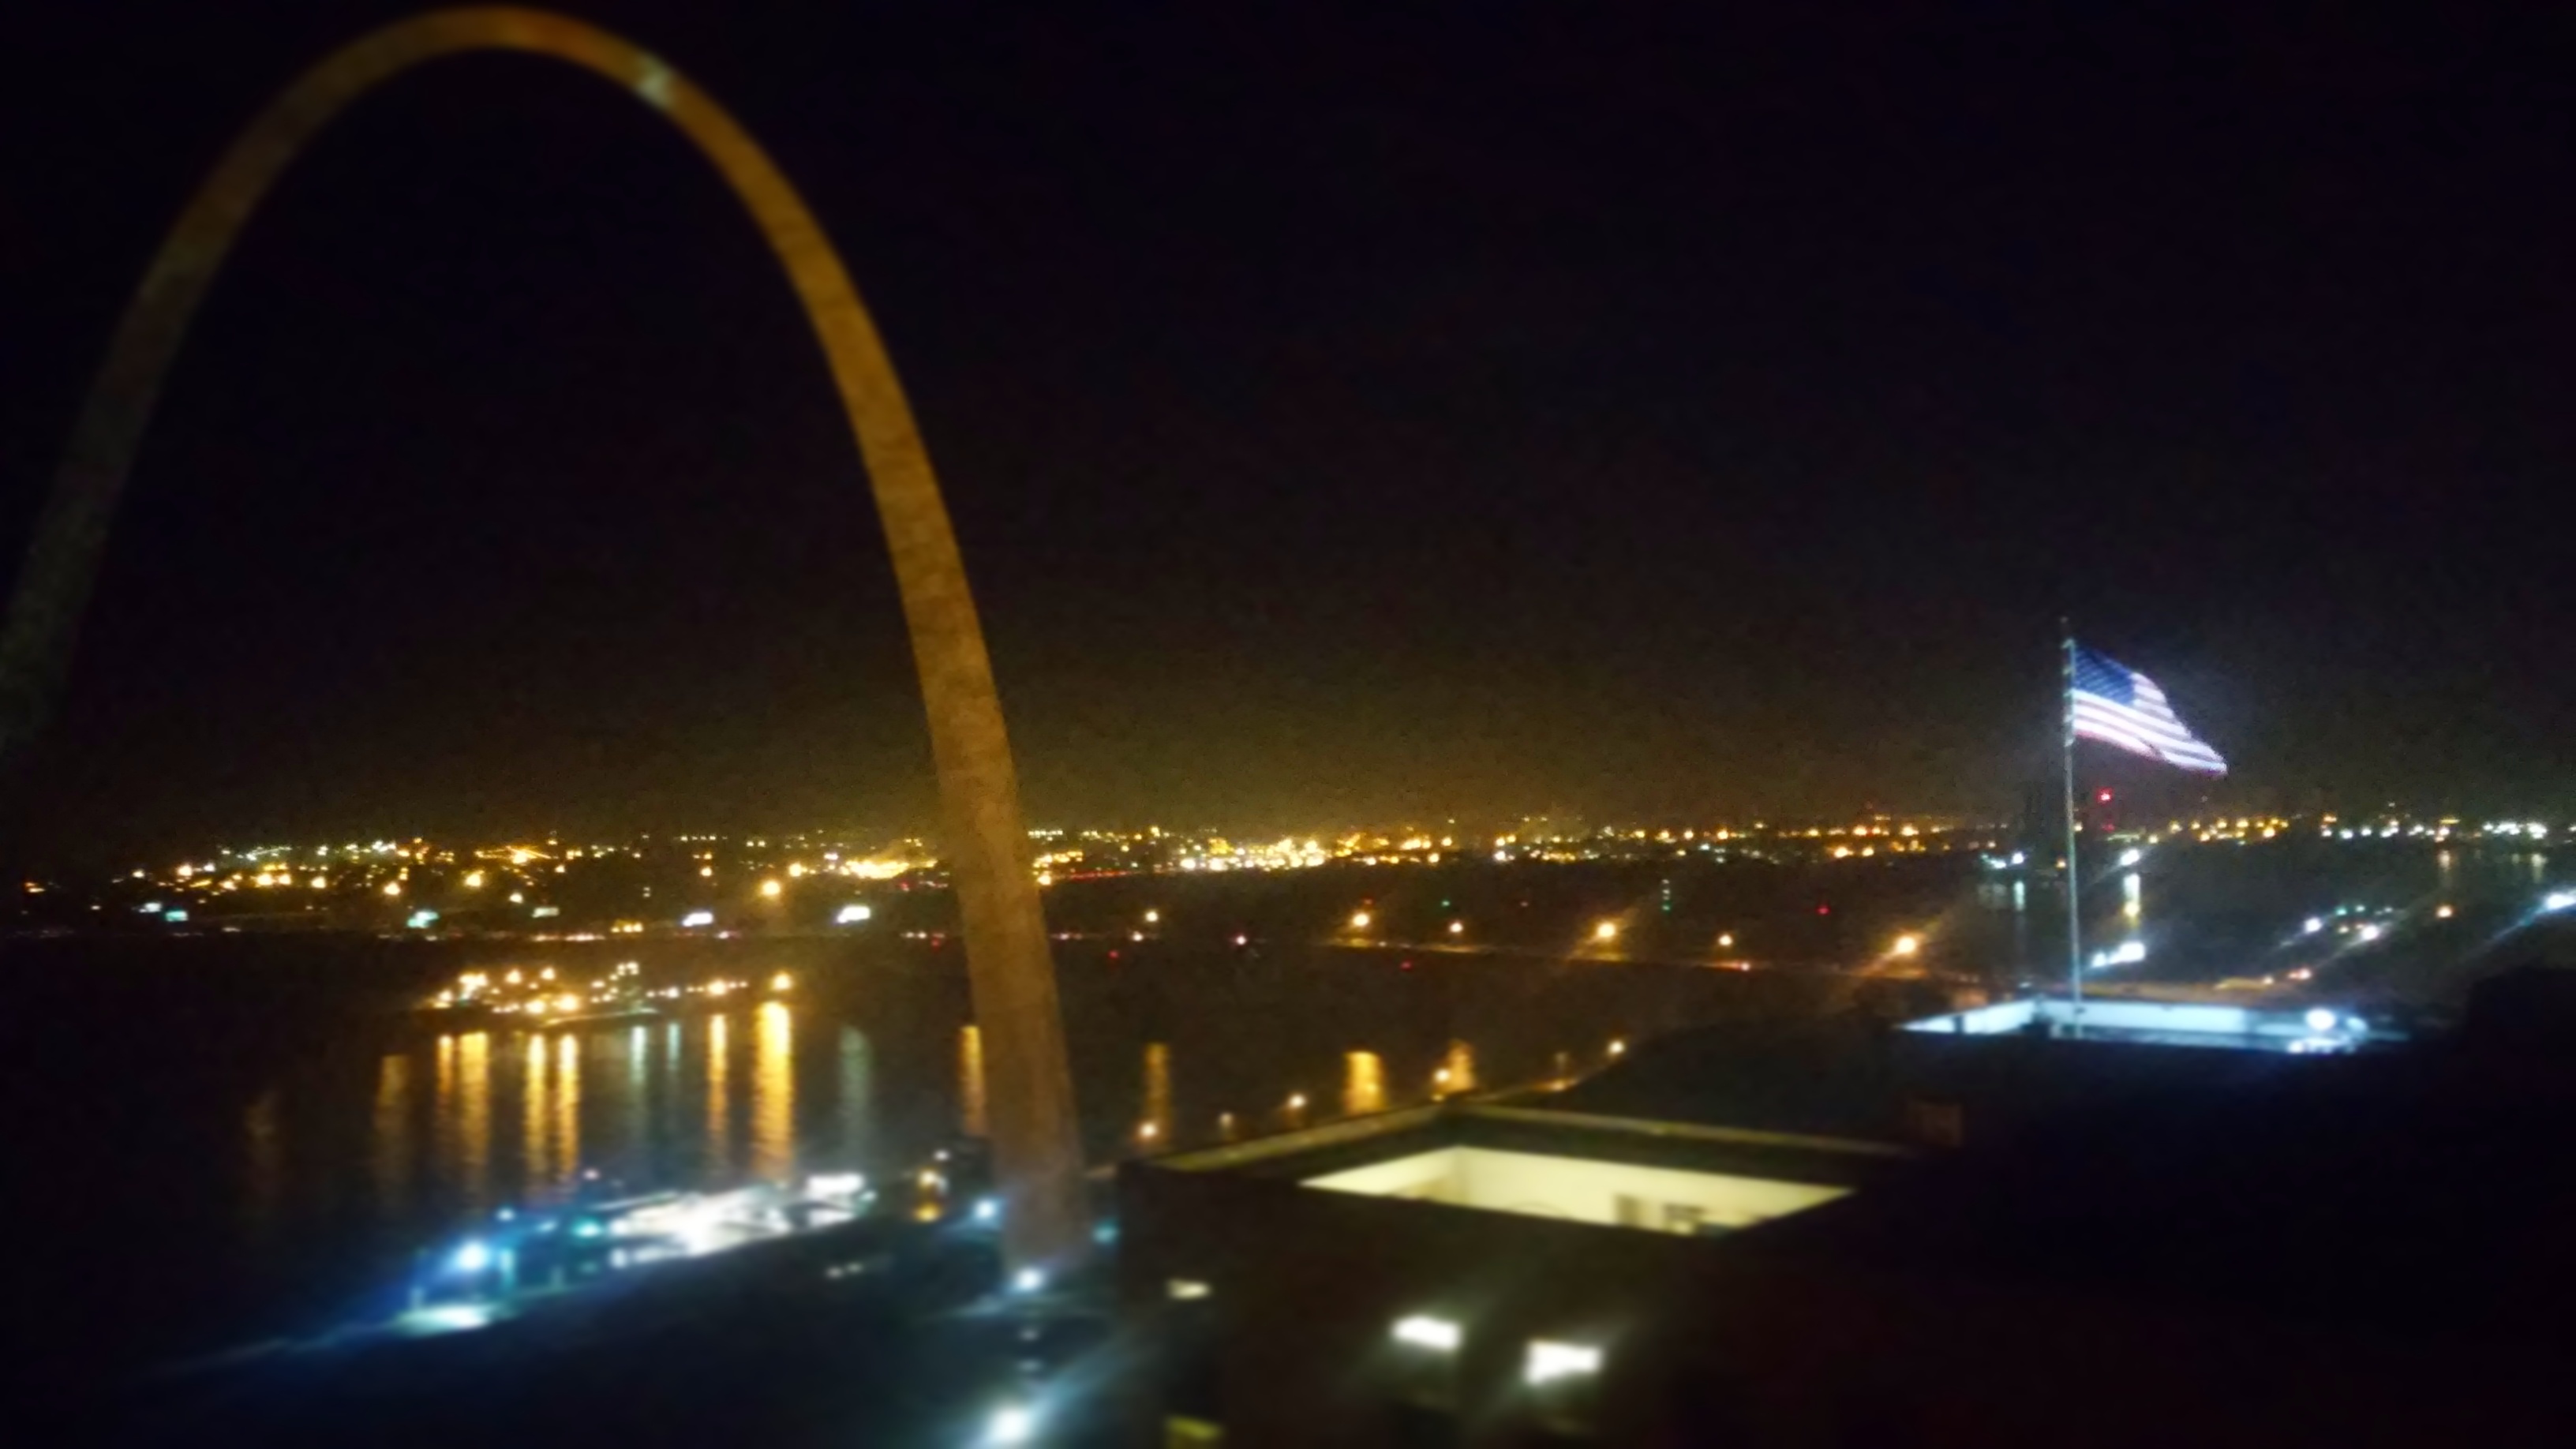 Gateway Arch St. Louis